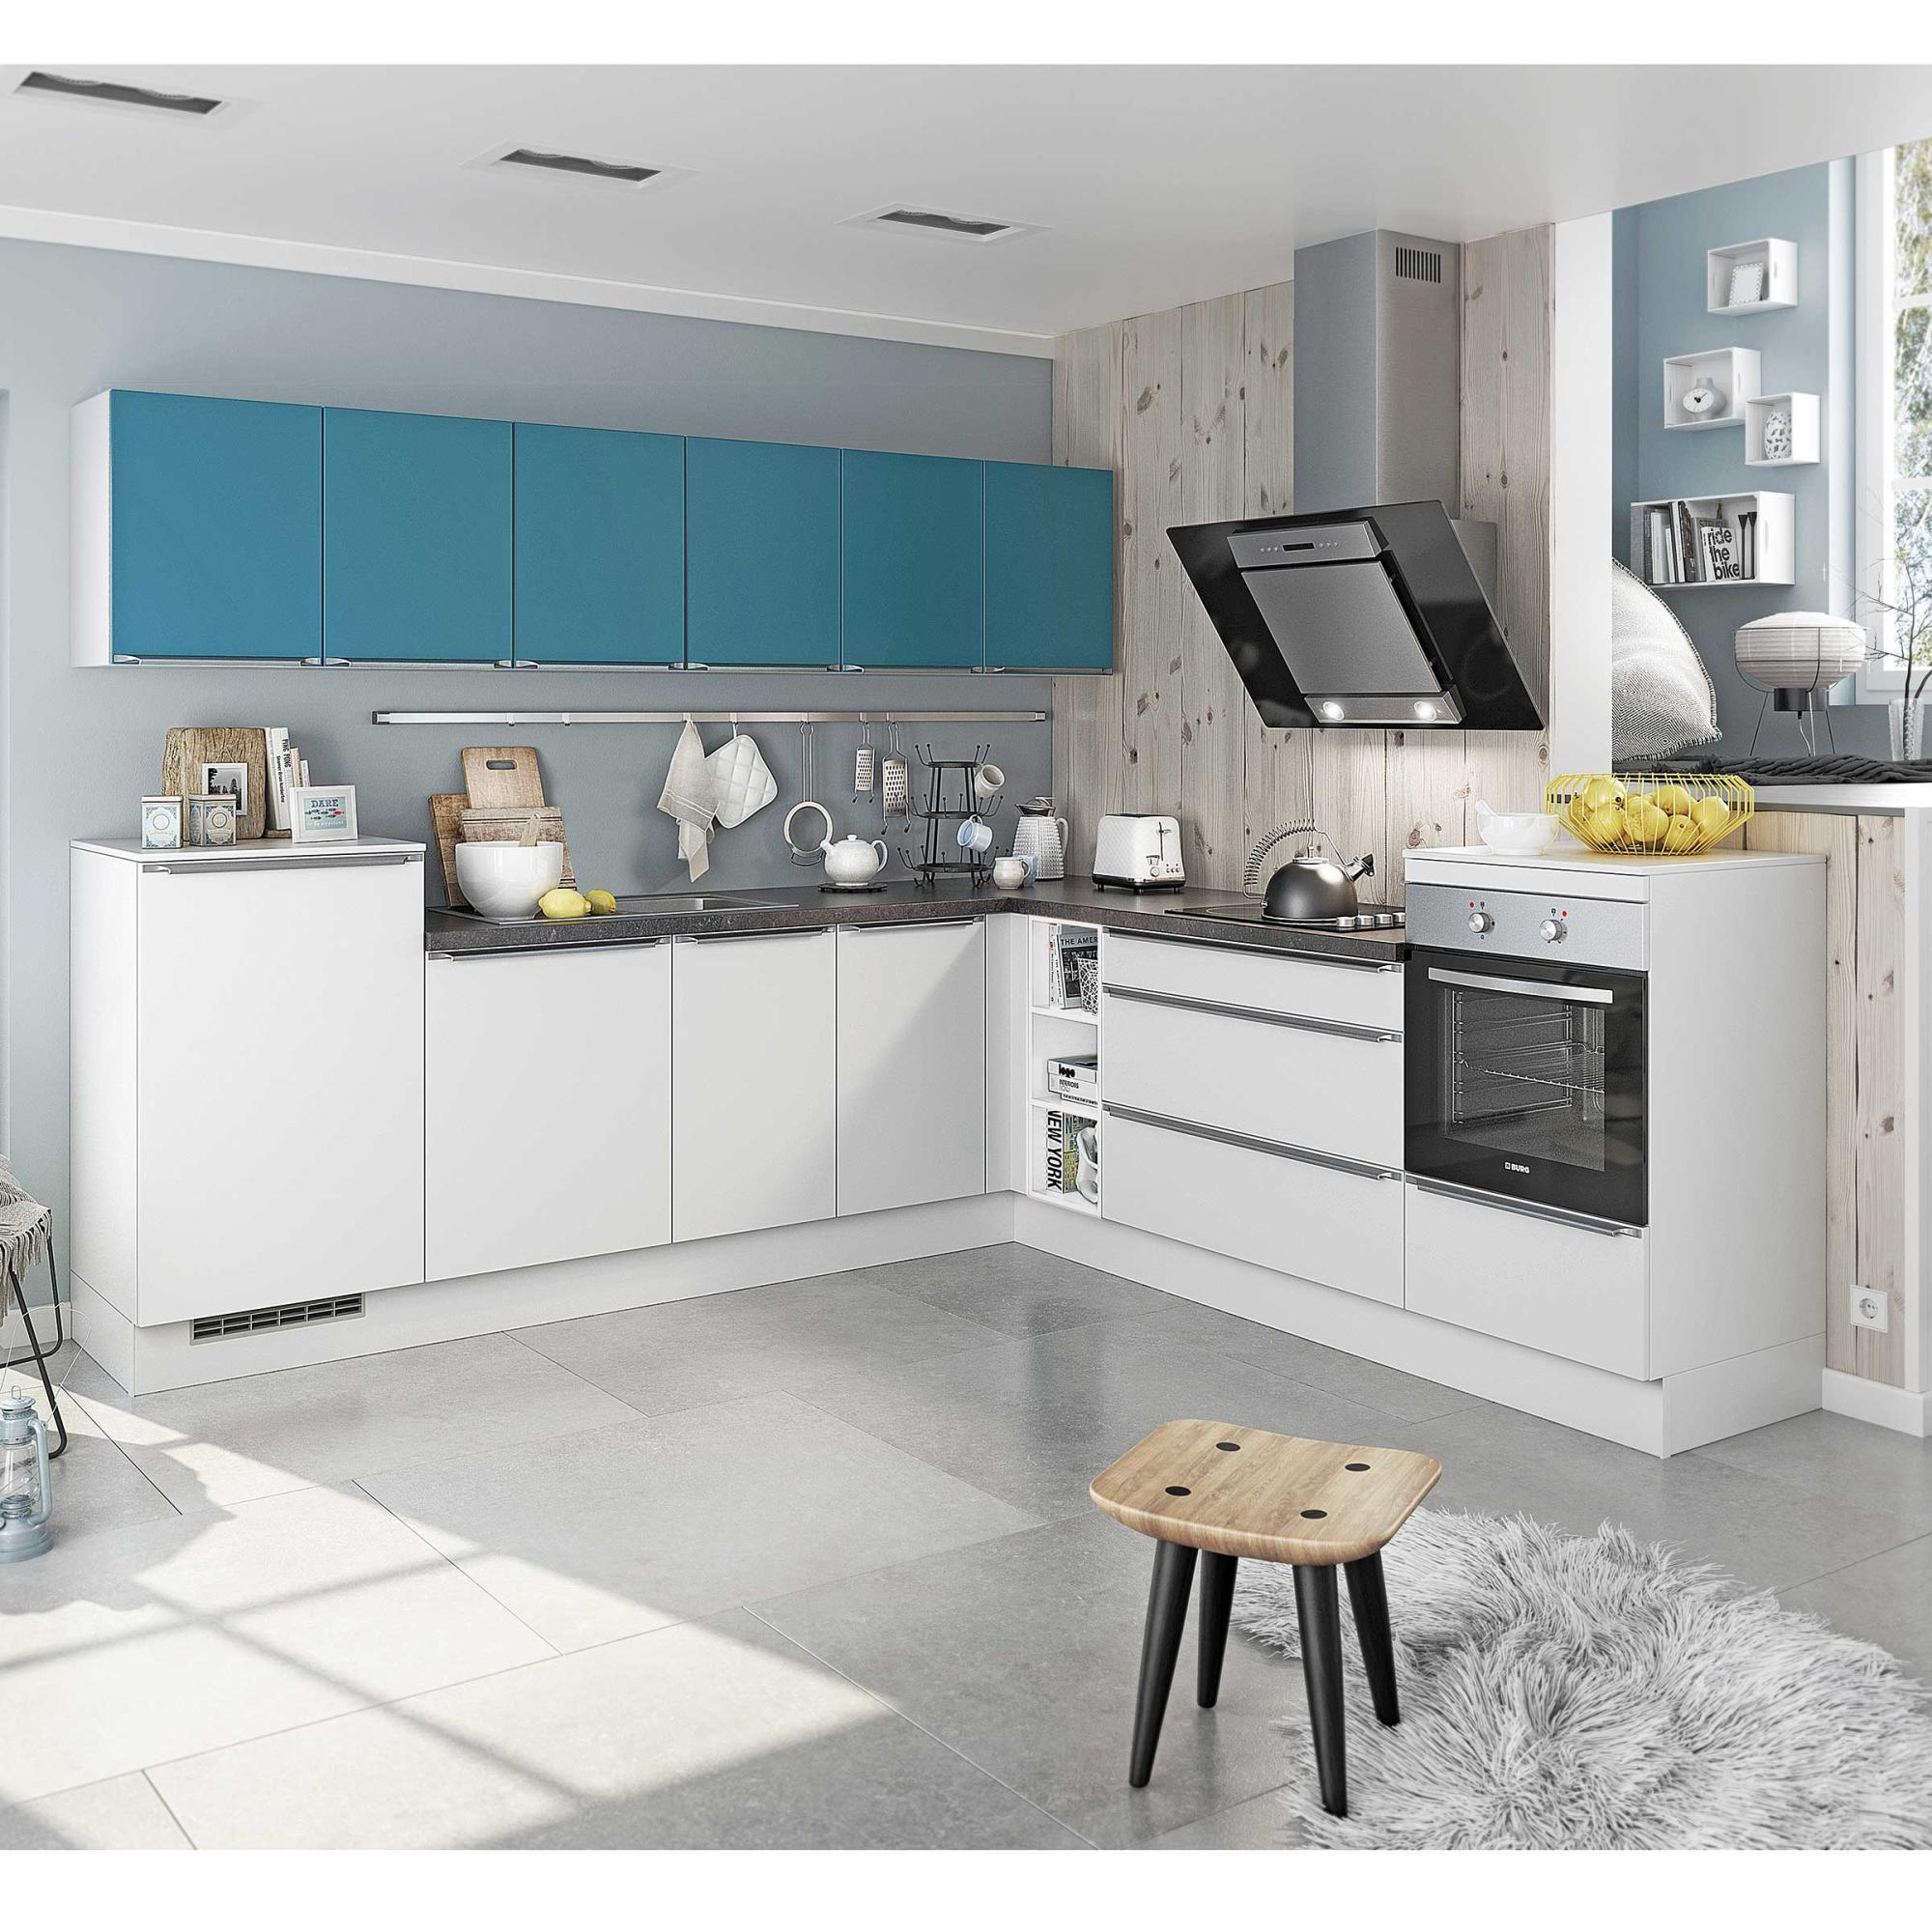 Küchenmöbel Inkl. Einbaugeräte Online Kaufen | Möbel Martin concernant Cuisine Mobel Martin